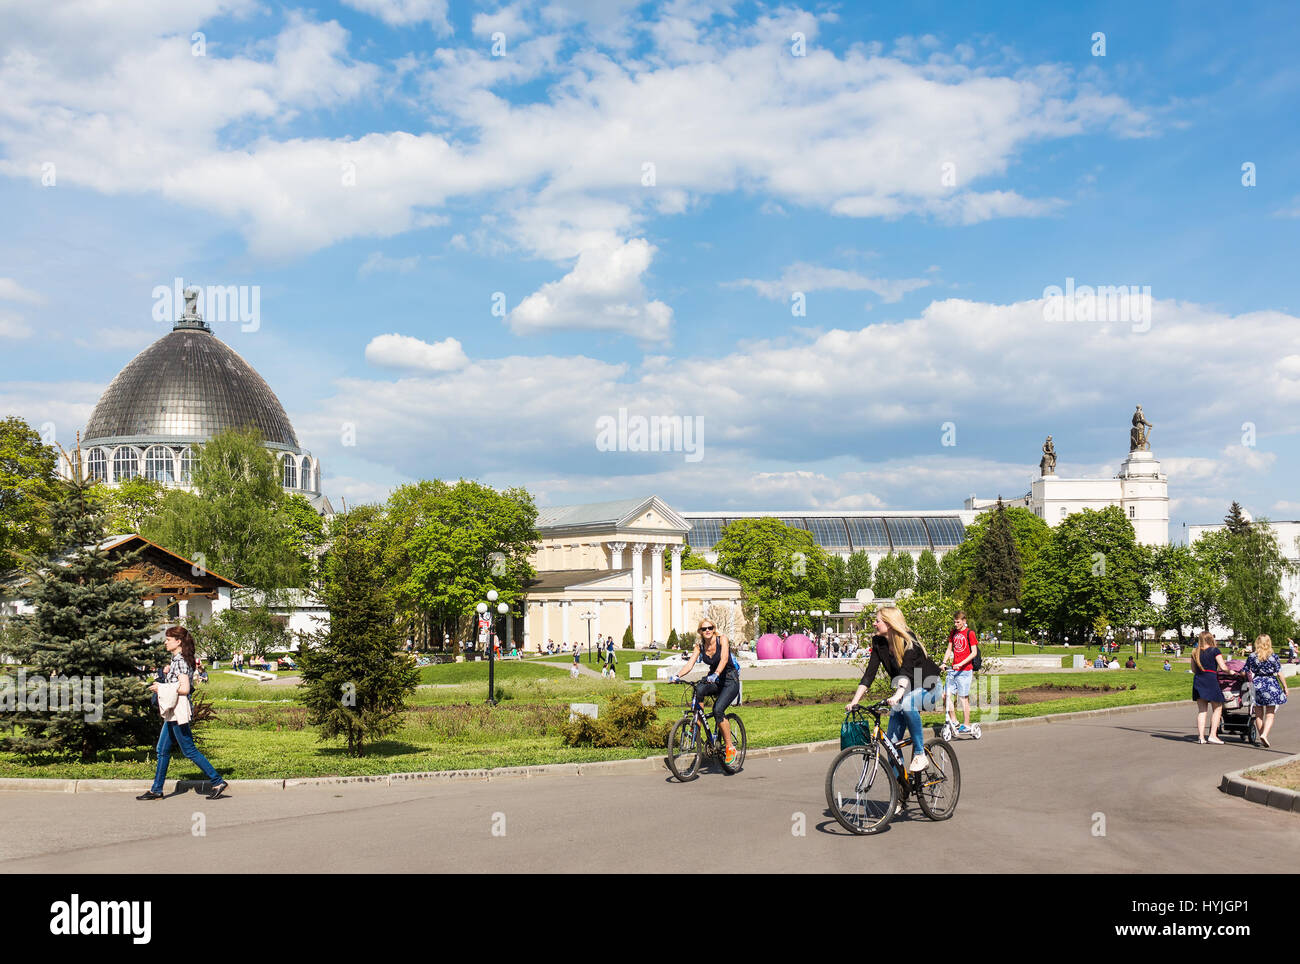 Mosca - 8 Maggio 2016: i giovani a piedi e in bicicletta al parco VDNKh complesso. È stato costruito in tempi sovietici come esposizione di risultati Foto Stock